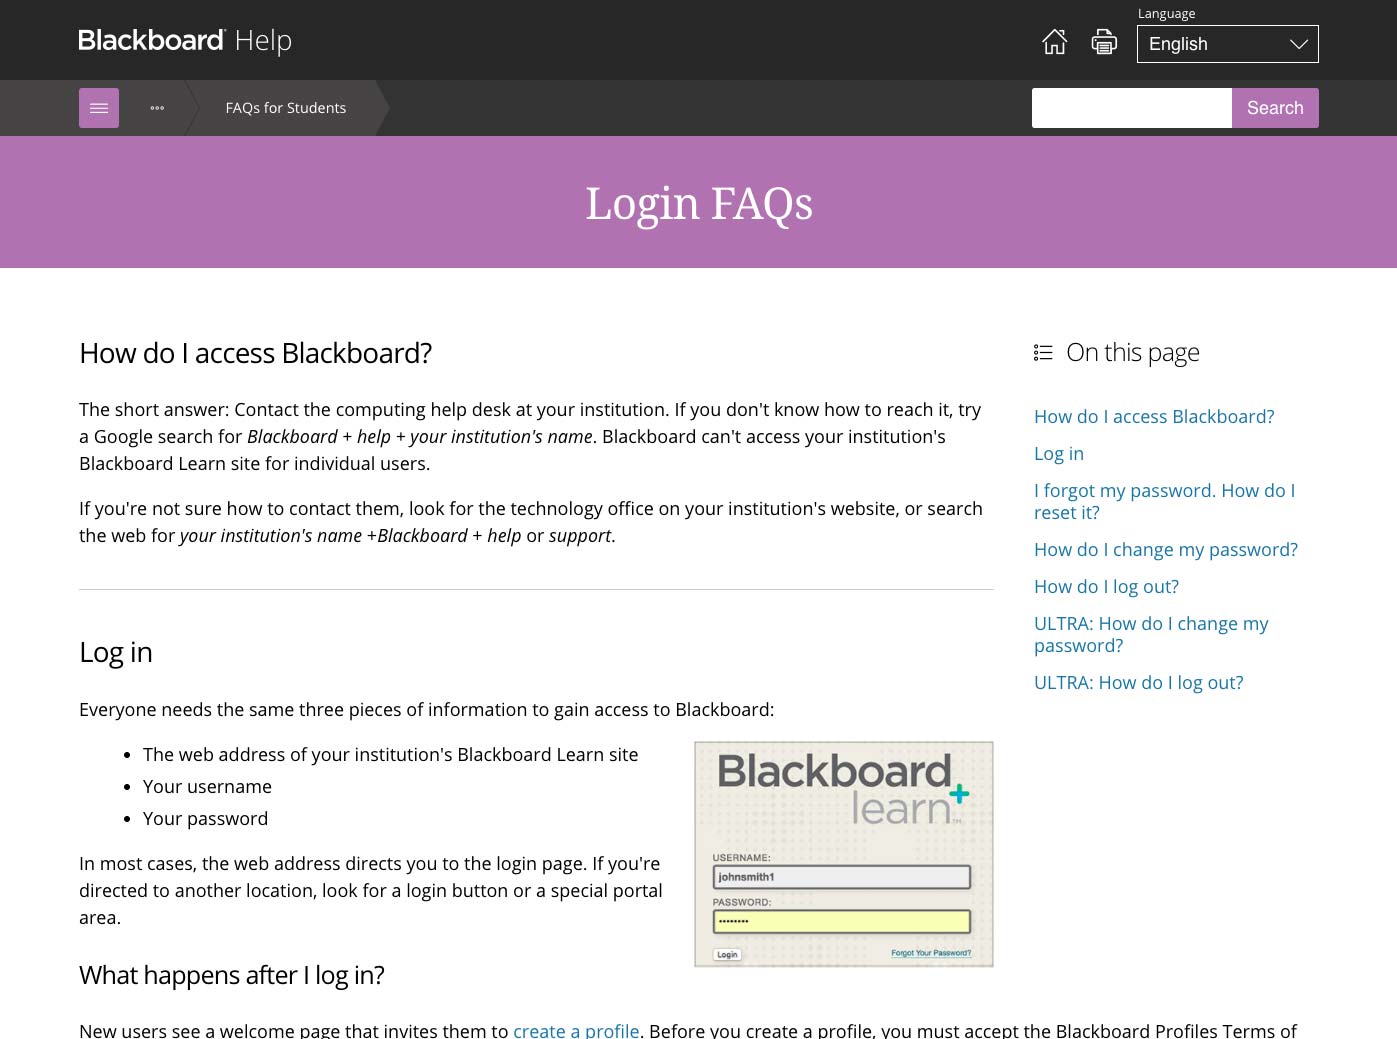 Blackboard Help article page